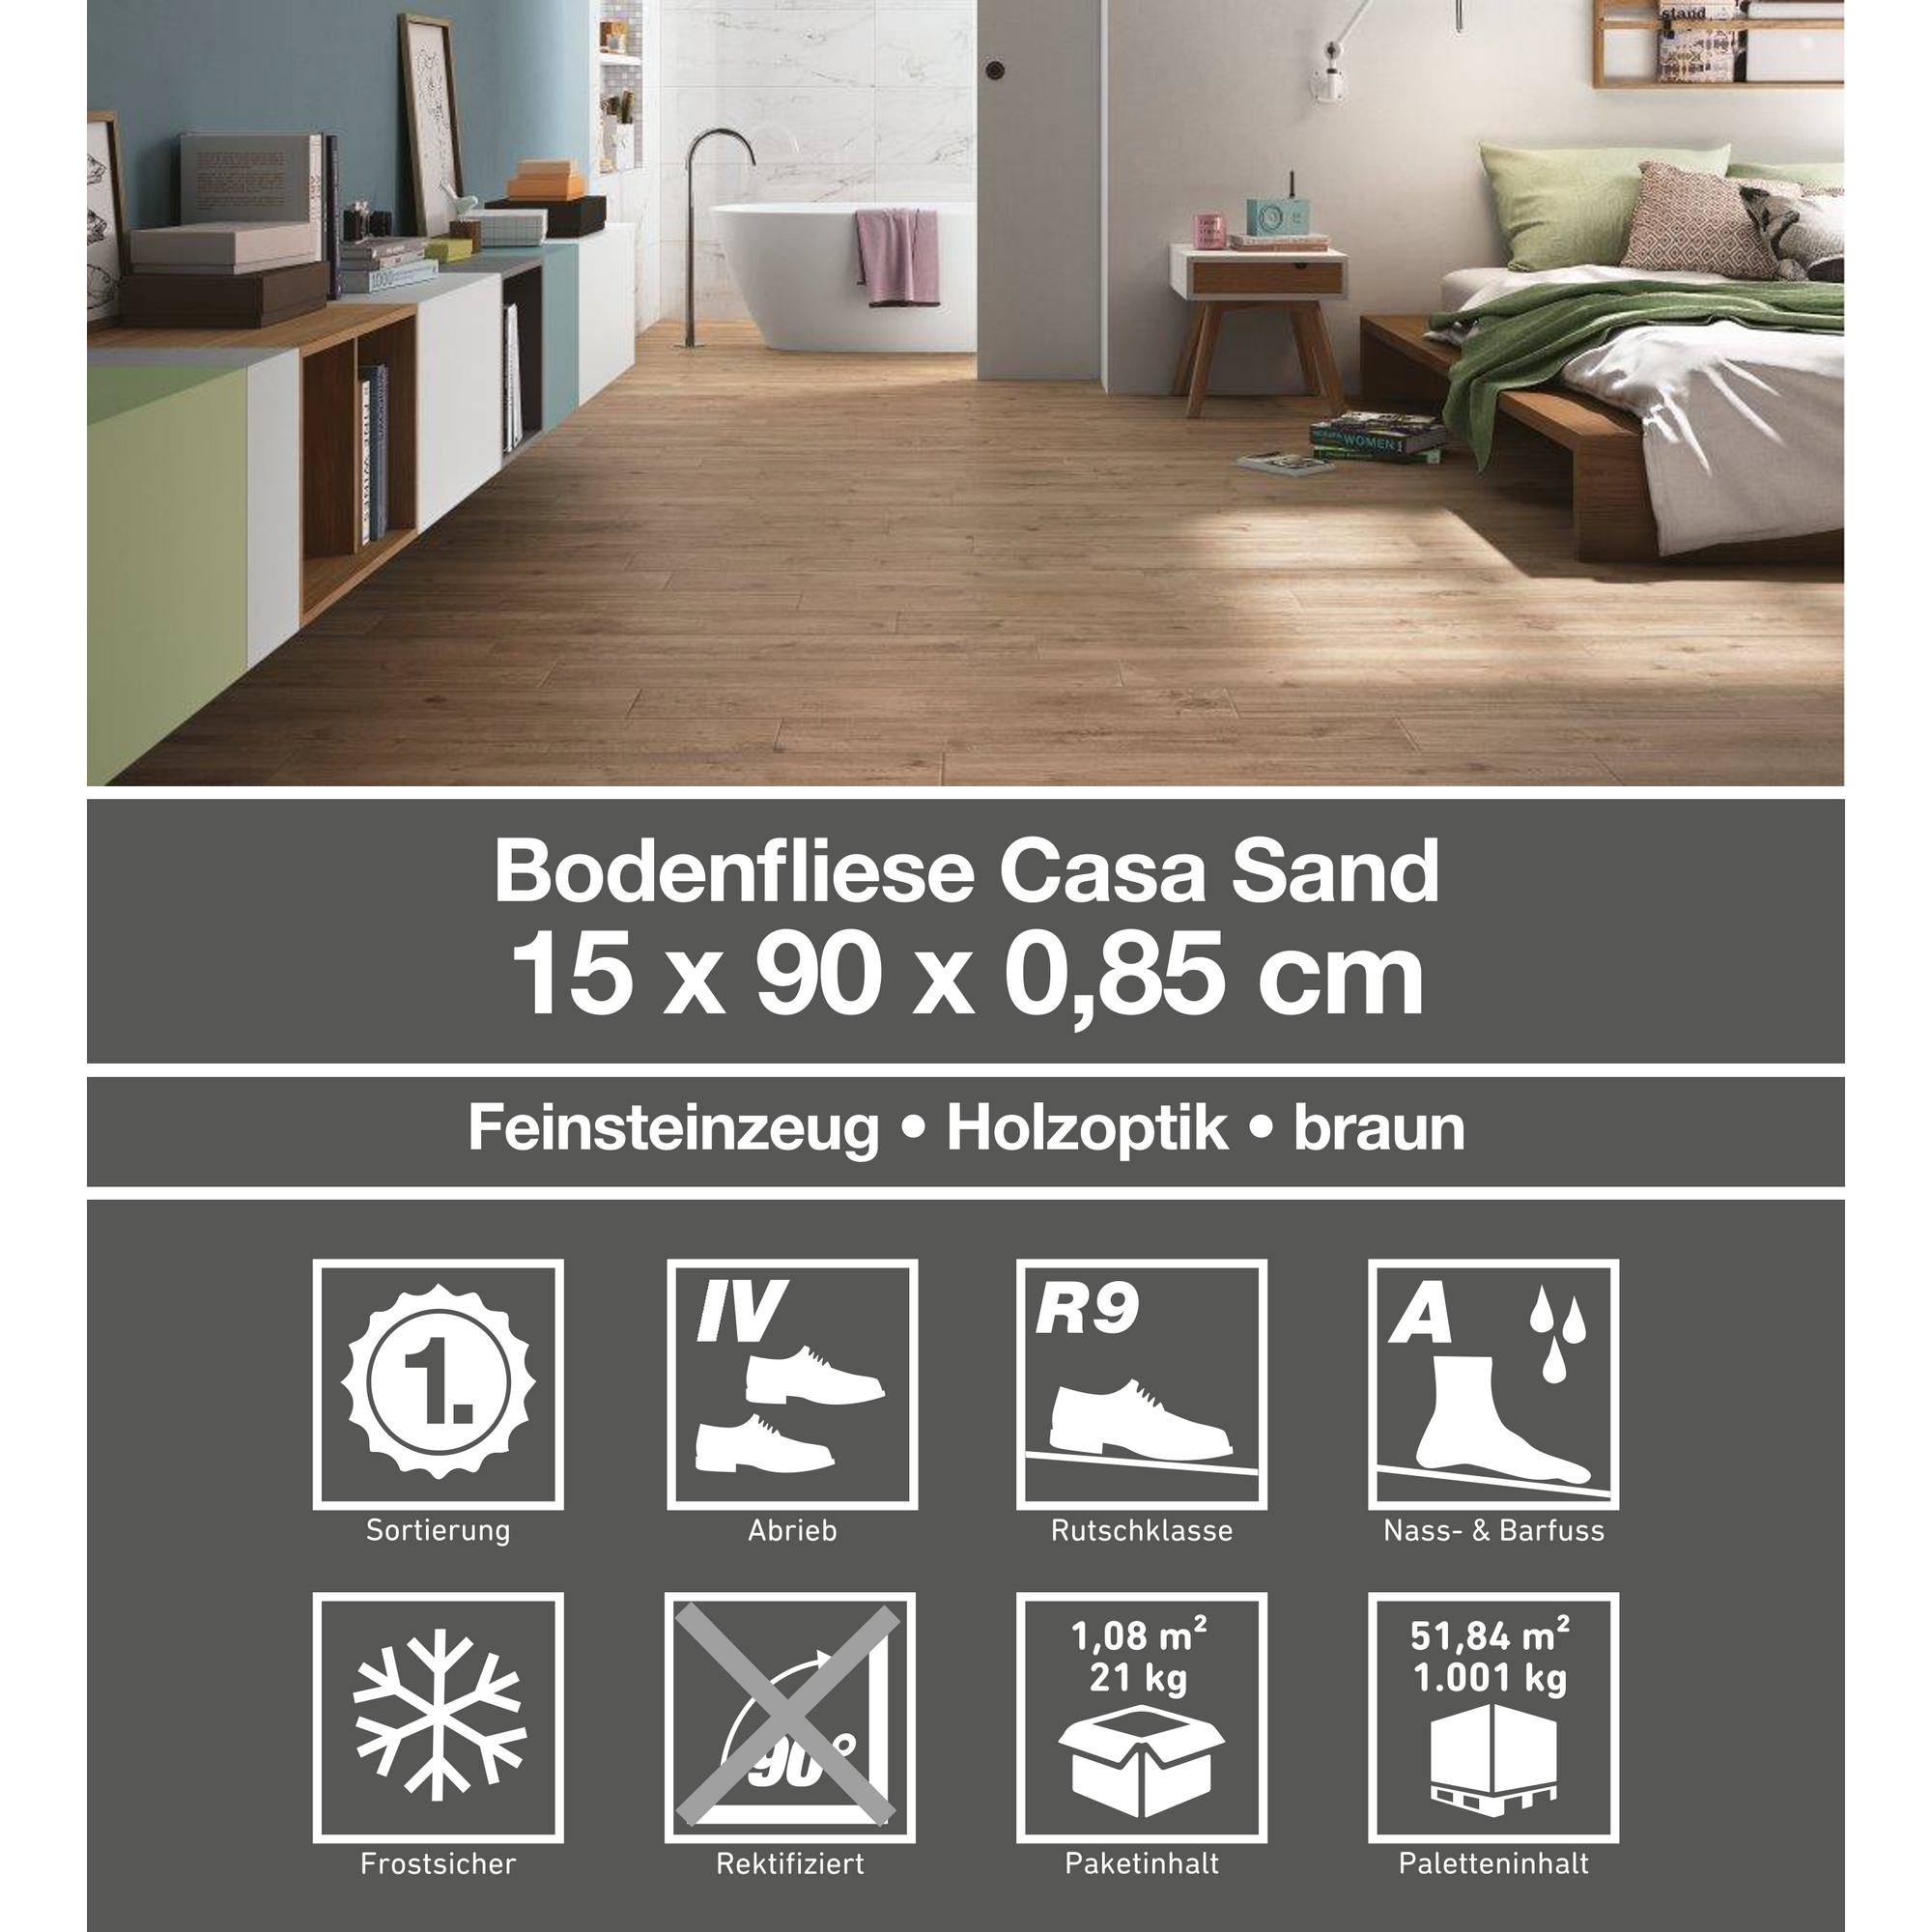 Bodenfliese 'Casa' Feinsteinzeug sandfarben 15 x 90 cm + product picture